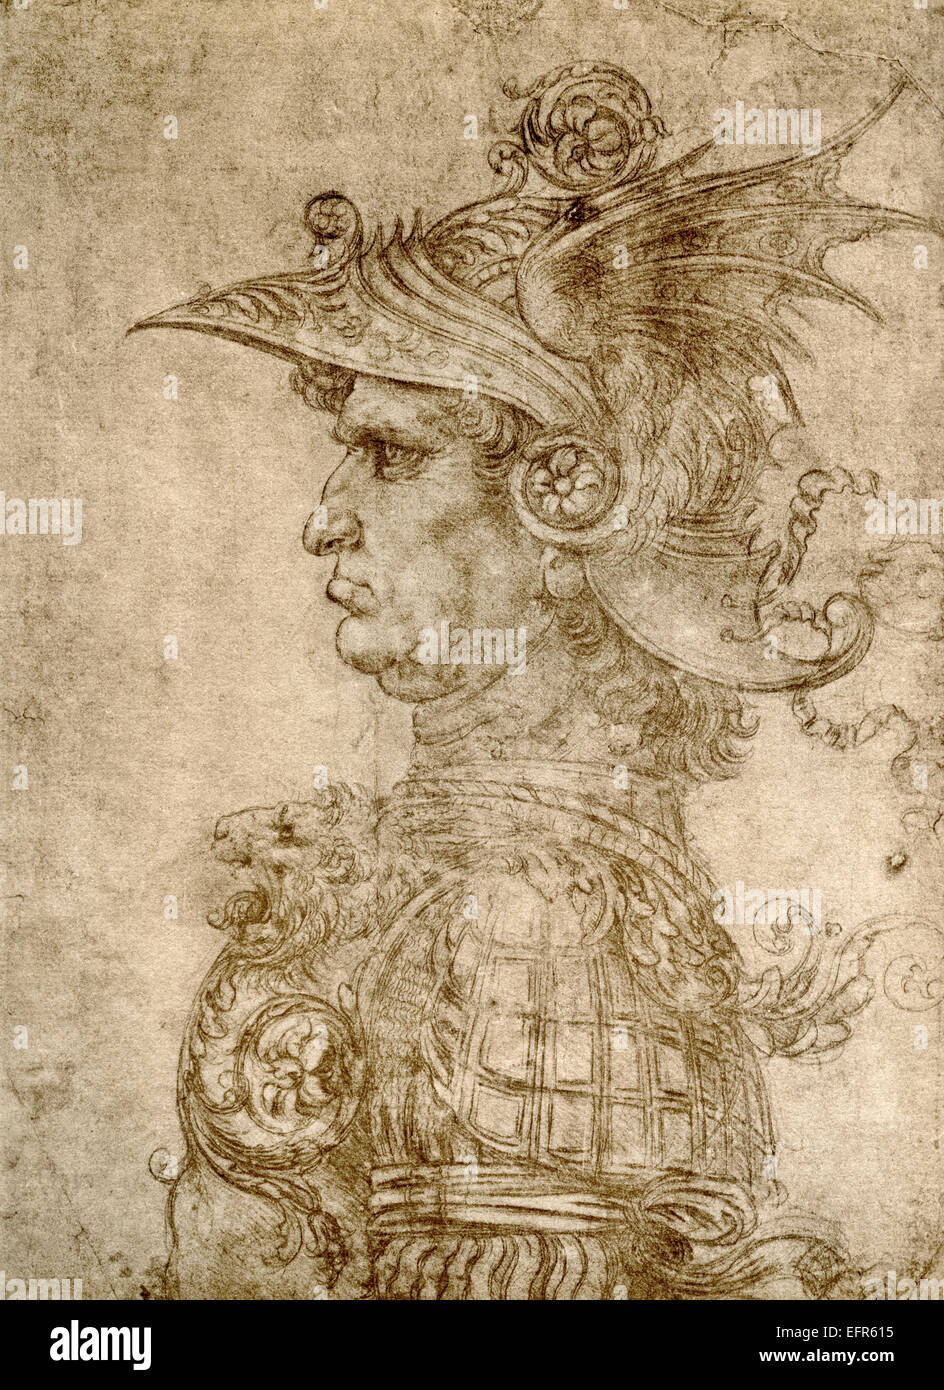 Profilo di un antico Capitano, aka condottiero, Warlord, circa 1472, dopo Leonardo da Vinci, 1452-1519, disegno in silverpoint su carta preparata. Foto Stock